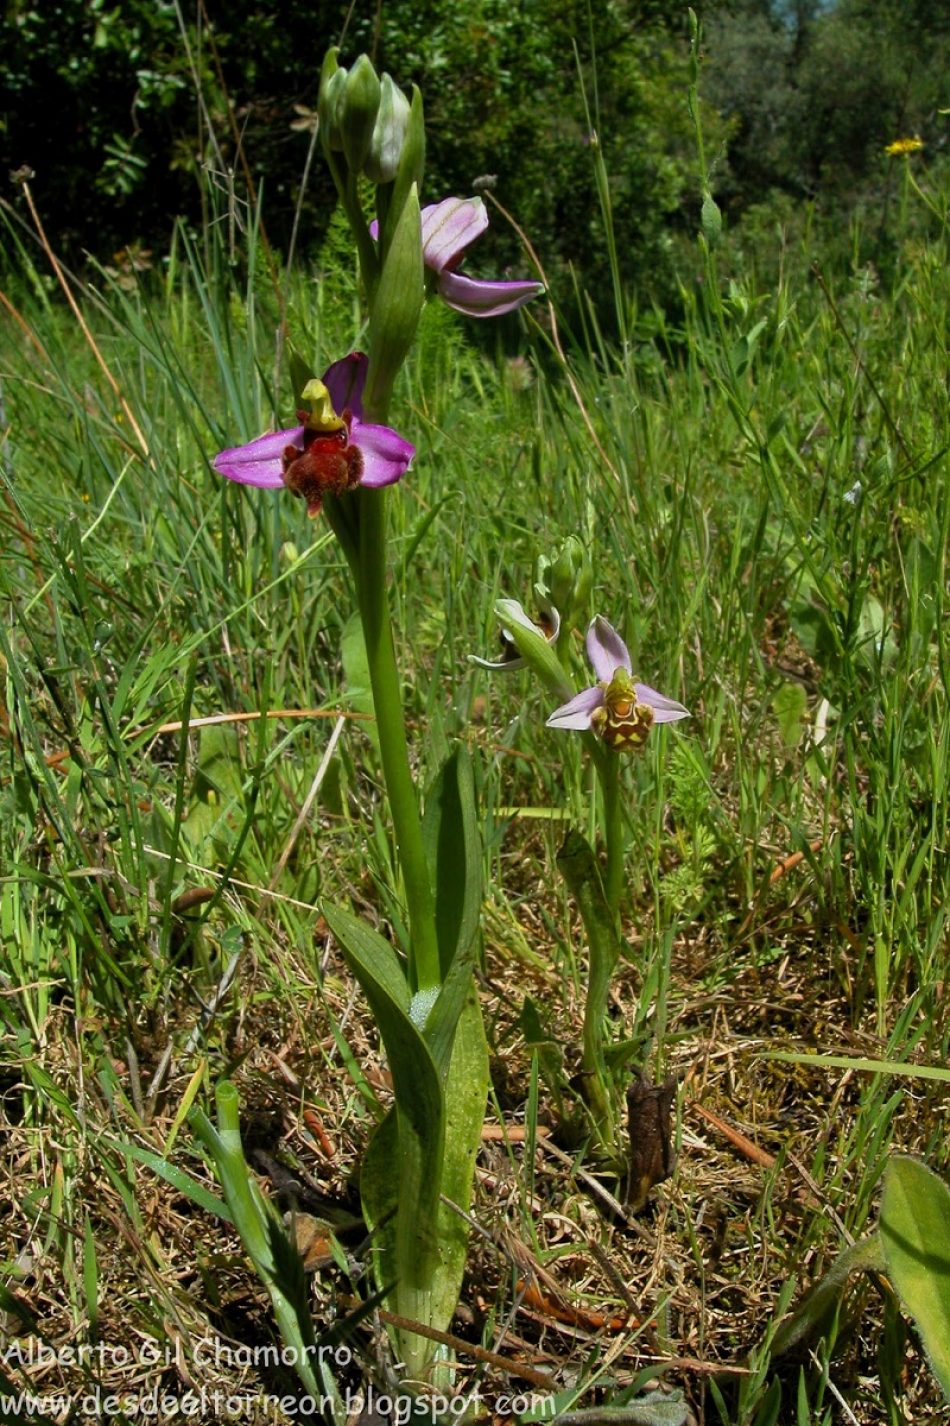 Solicitan que la Orquídea de Almaraz (Ophrys apífera var. almaracendis) se incluya en el Catálogo Regional de Especies Amenazadas de Extremadura